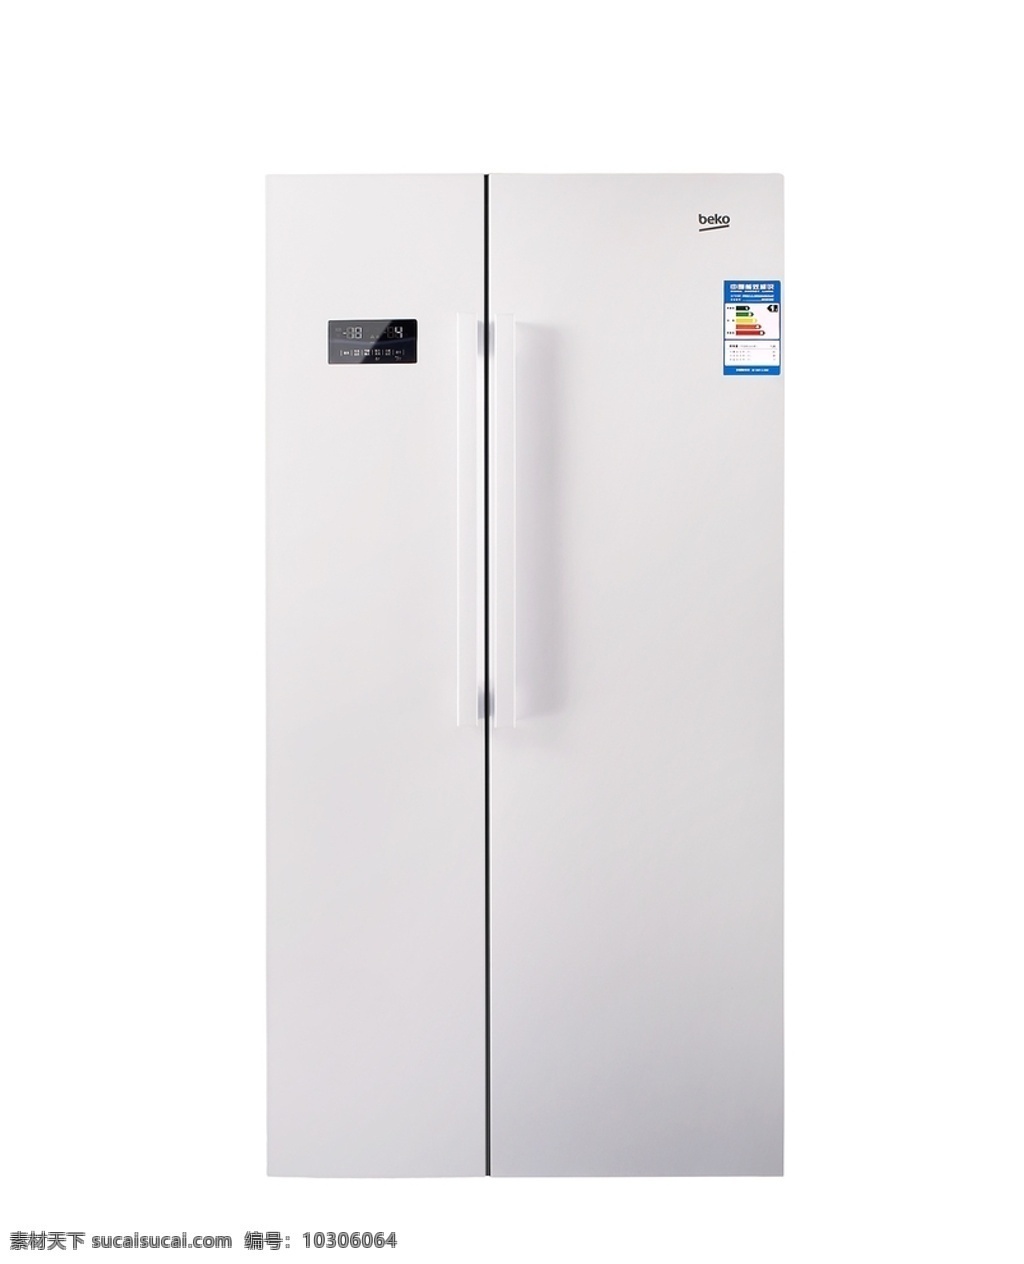 冰箱图片 冰箱家电 智能冰箱 多门冰箱 大型冰箱 冰箱 生活百科 数码家电